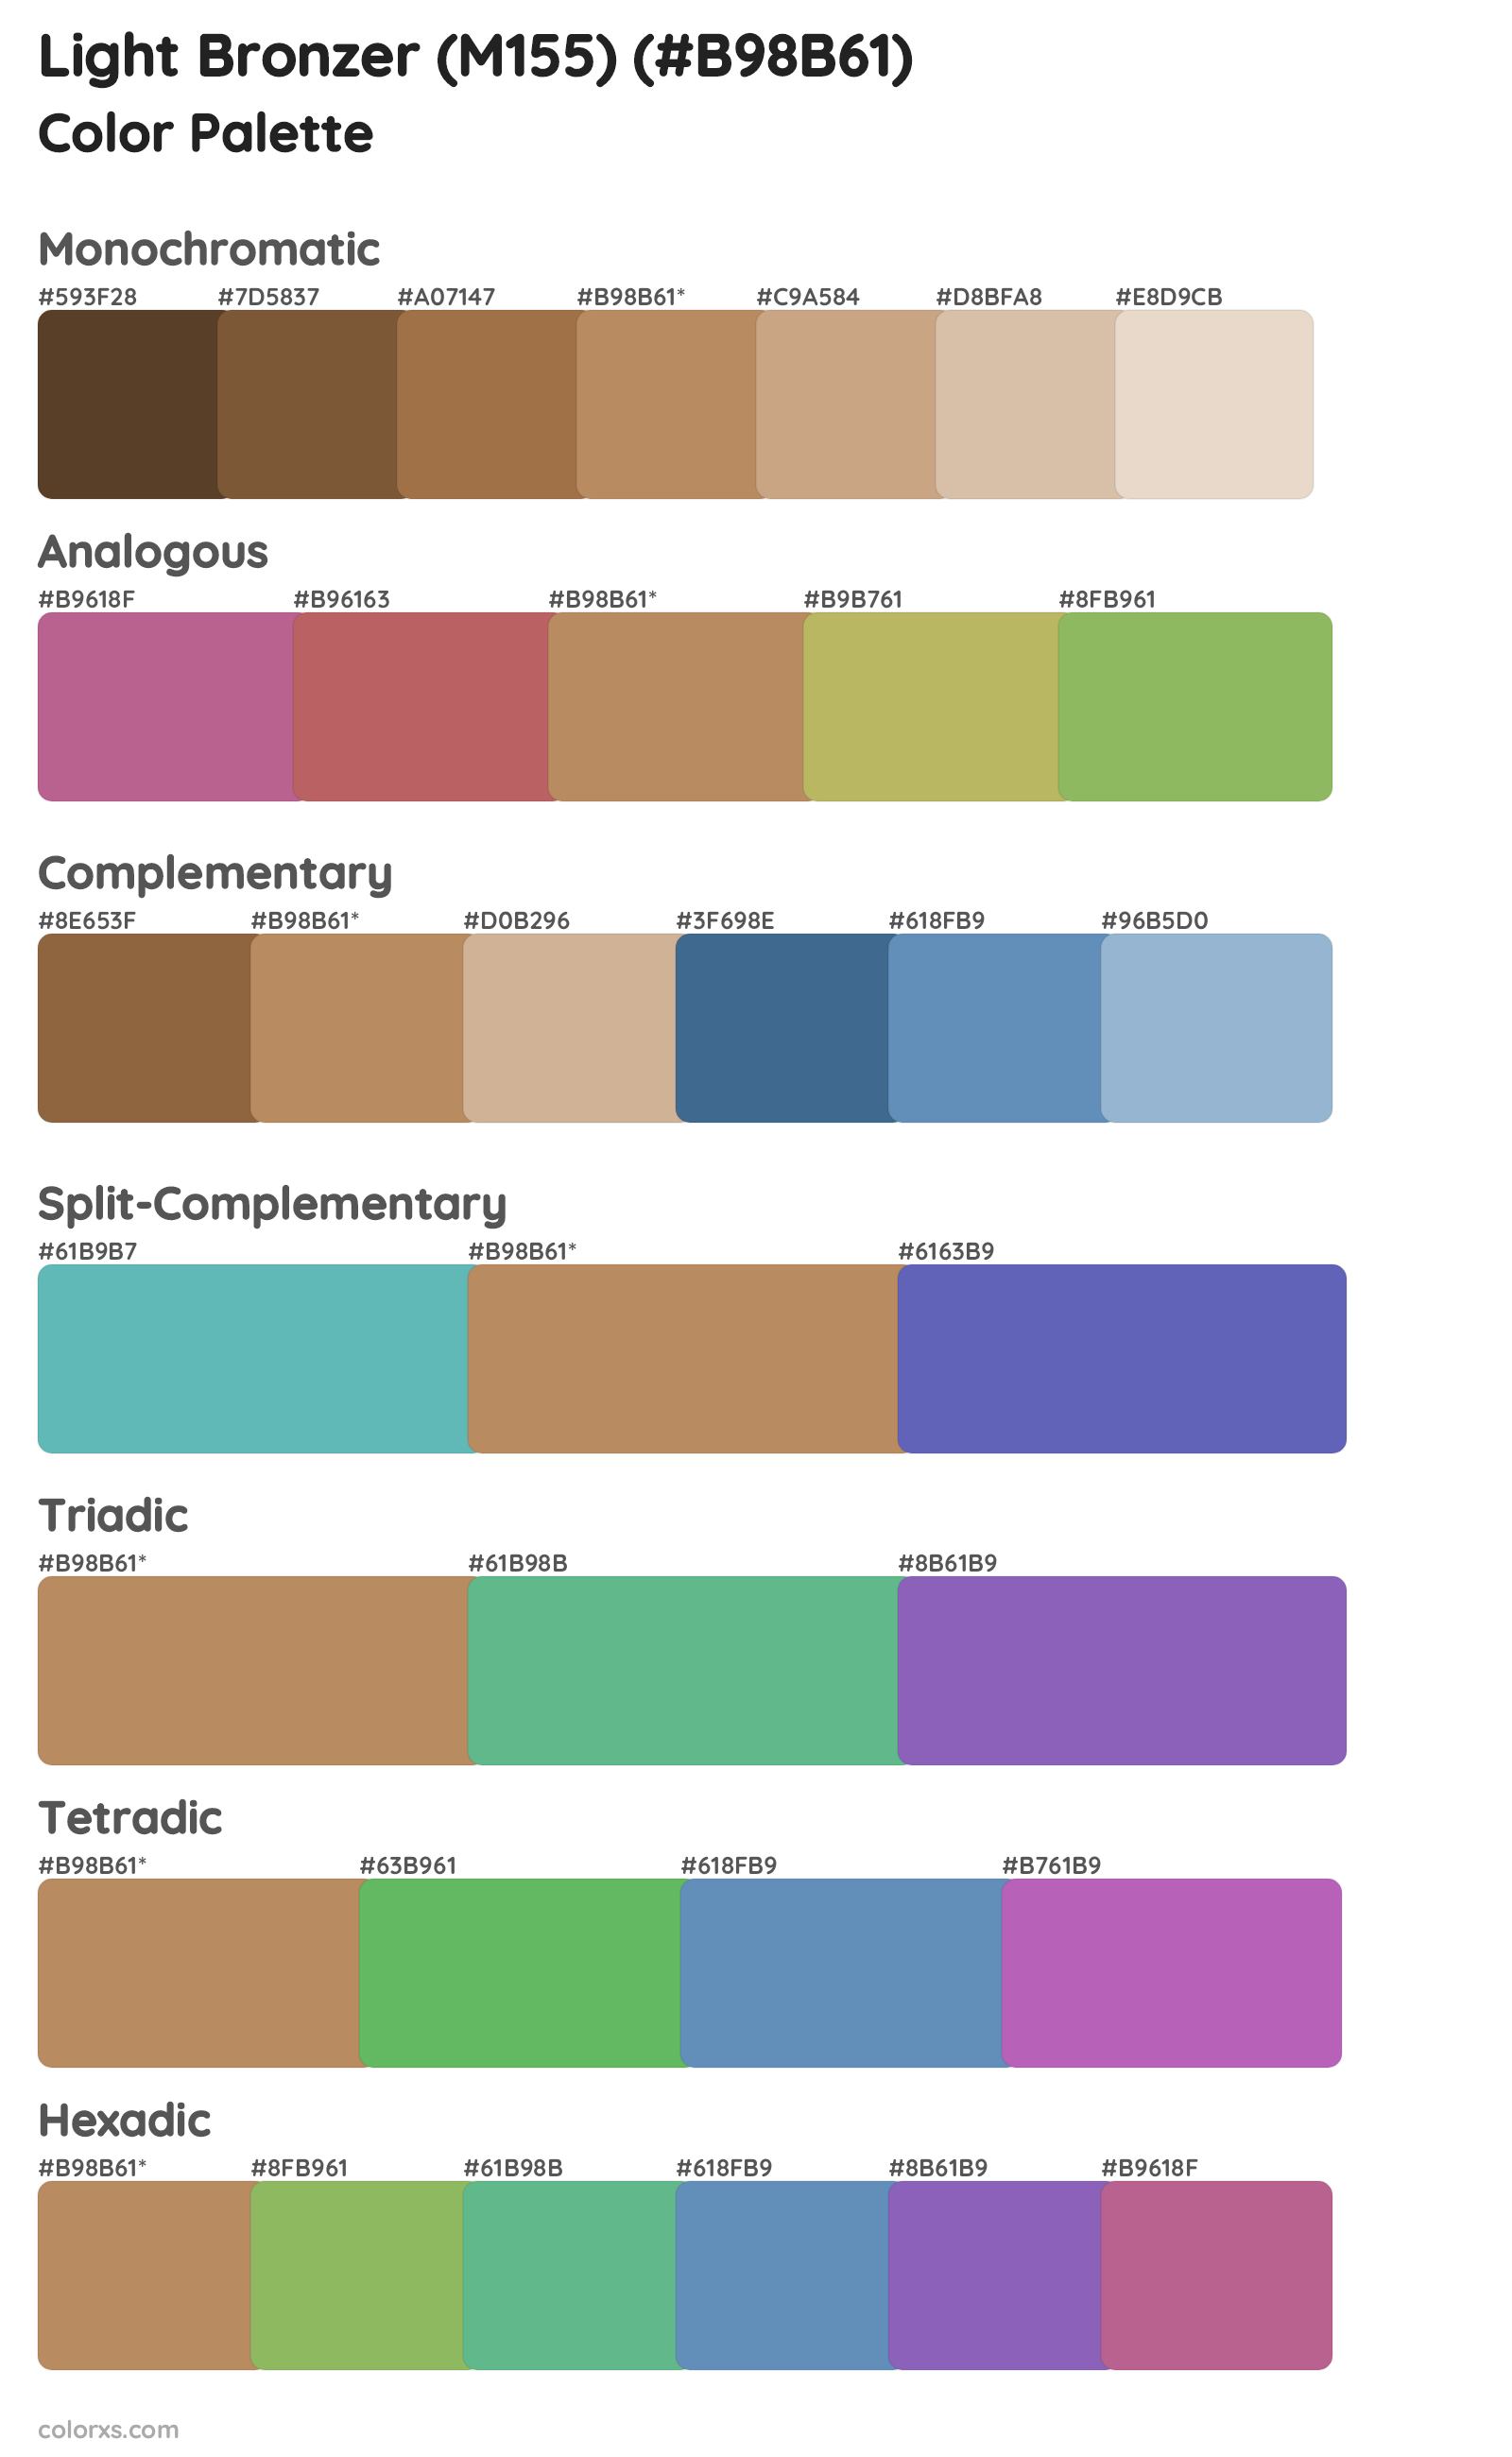 Light Bronzer (M155) Color Scheme Palettes